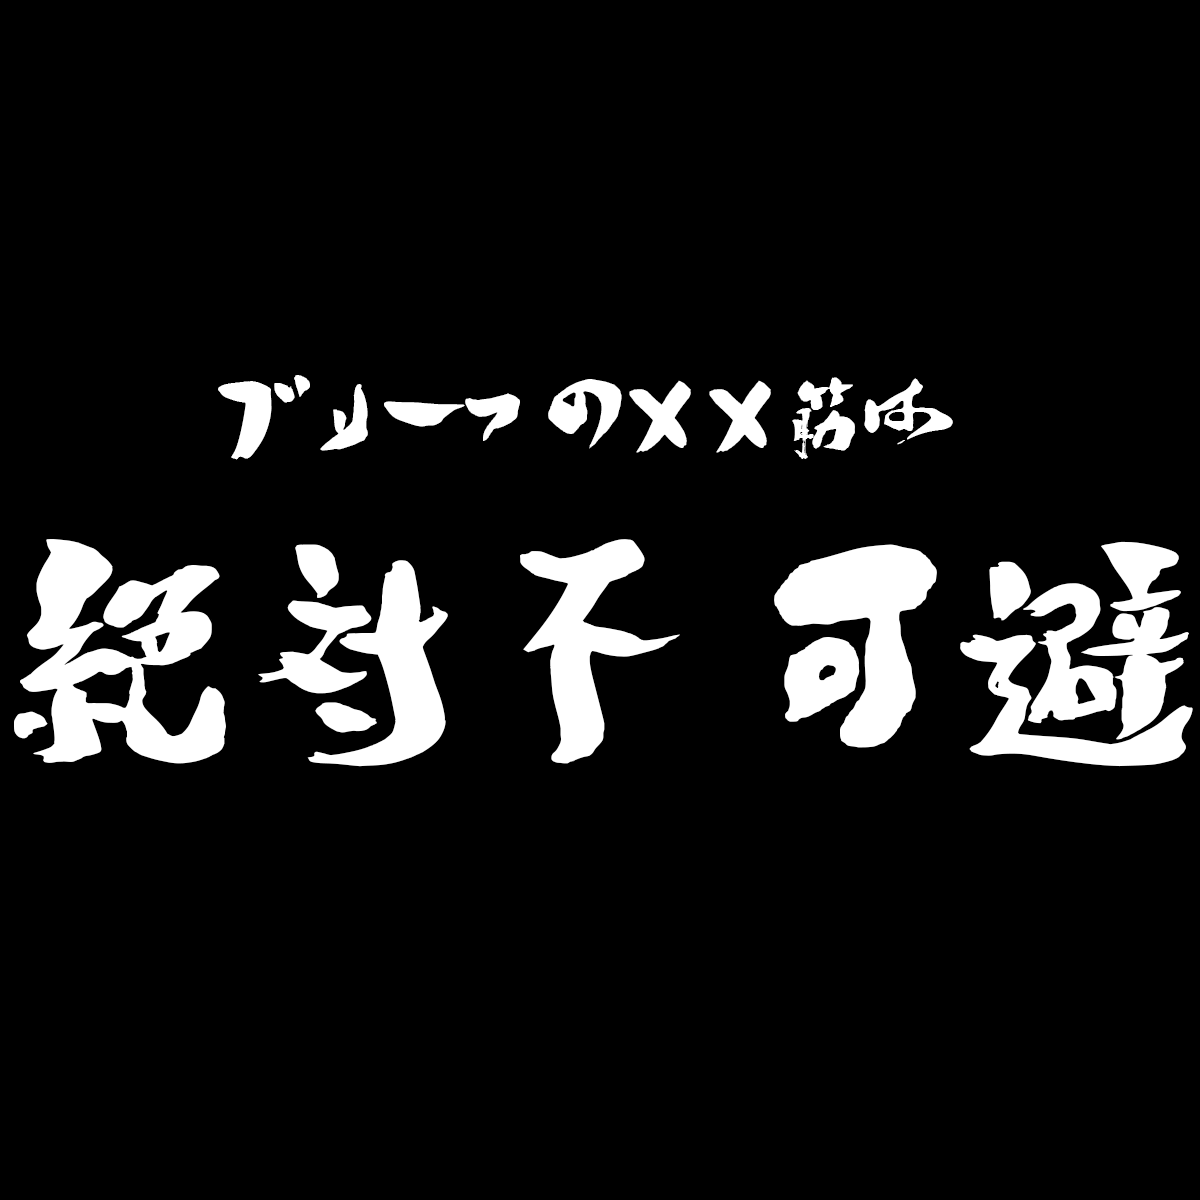 ラブリーアニメ タイトル 銀魂 題名 最高の壁紙hd